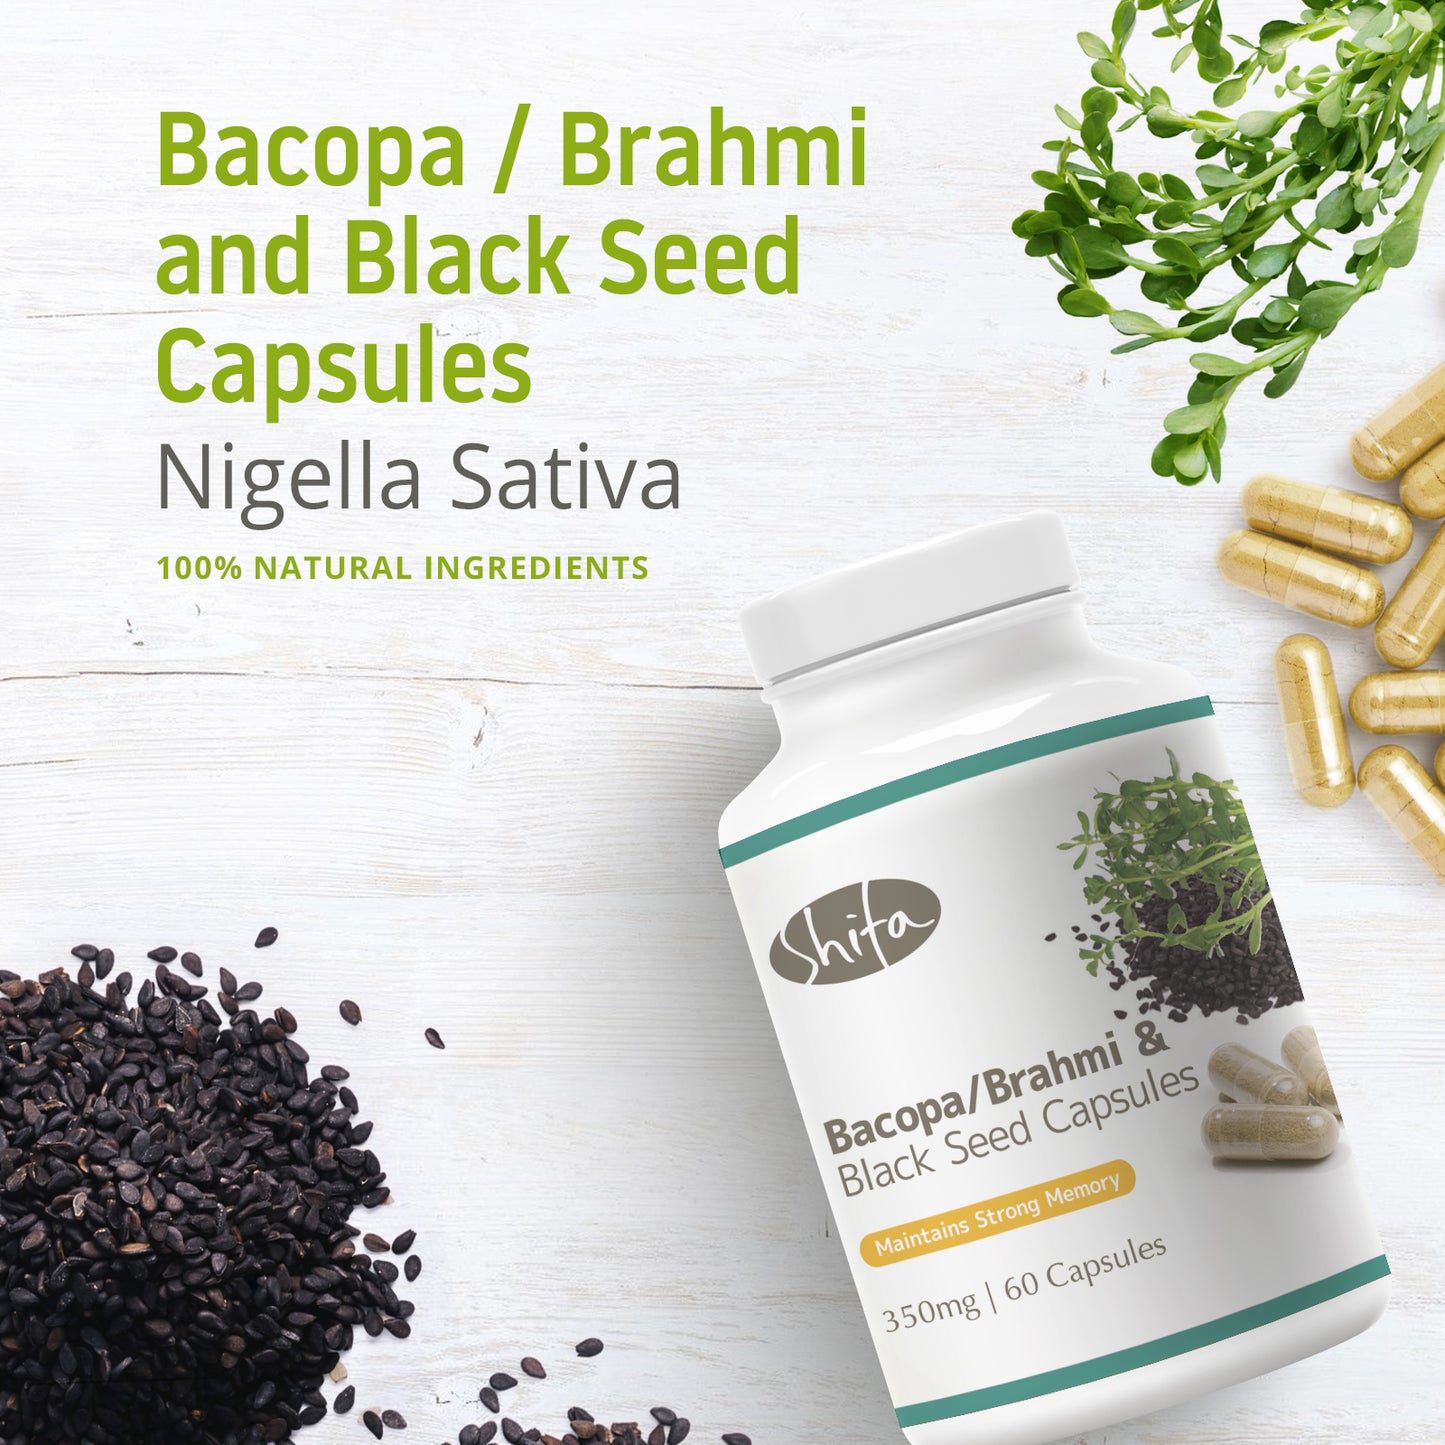 Bacopa/Brahmi & Black Seed Capsules (350mg | 60 Caps)